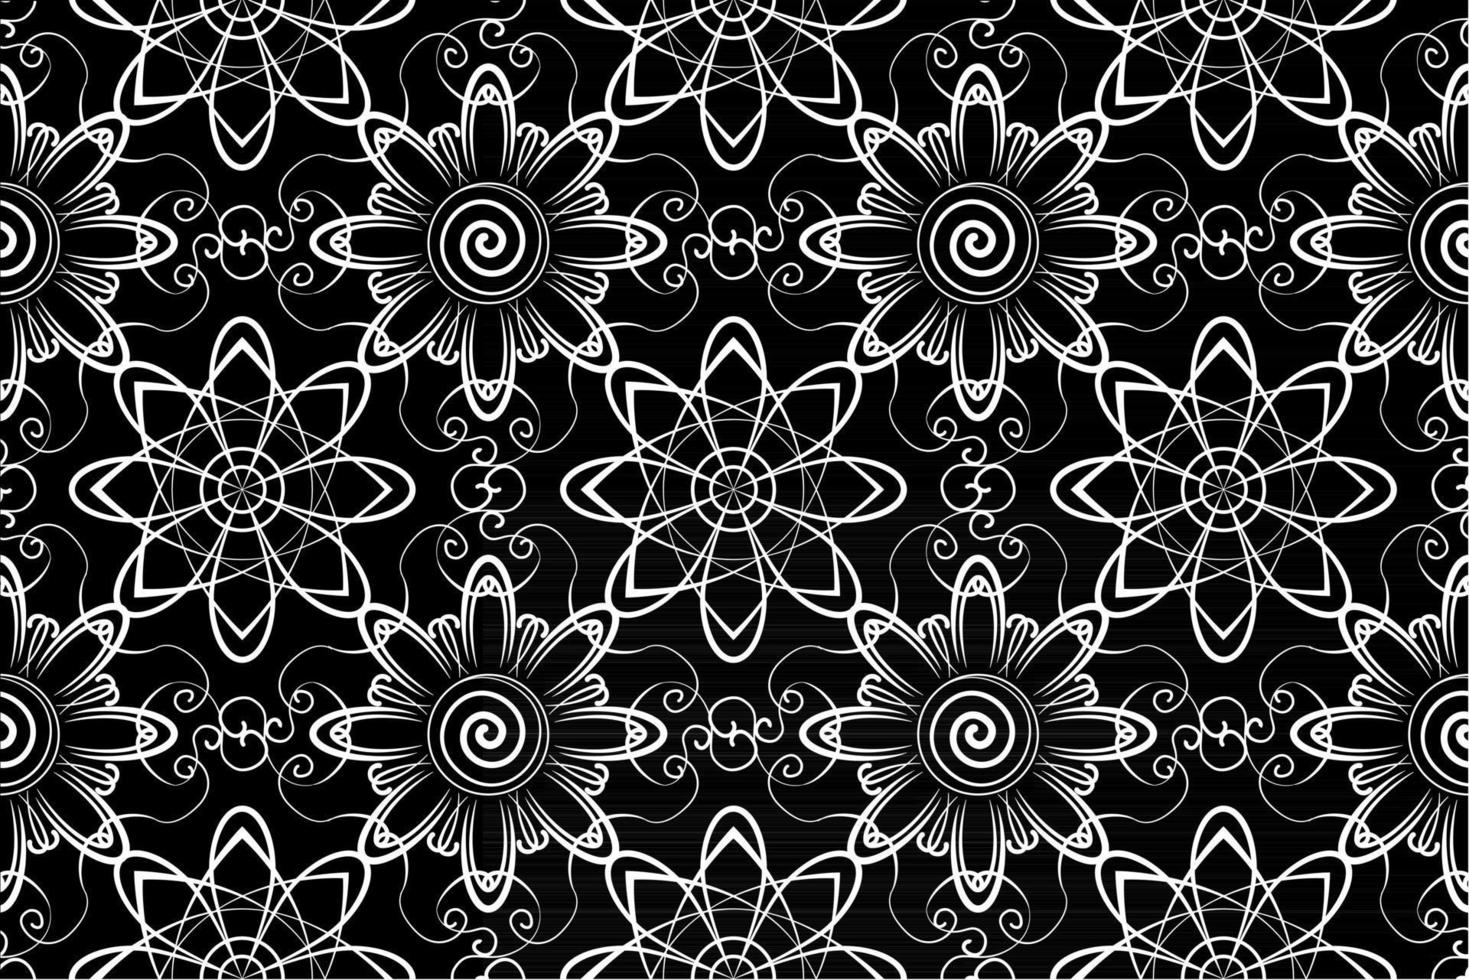 abstraktes nahtloses Wiederholungsmuster, schwarz und weiß, florales Wiederholungsmuster Monochrom, Mandala Textil vektor